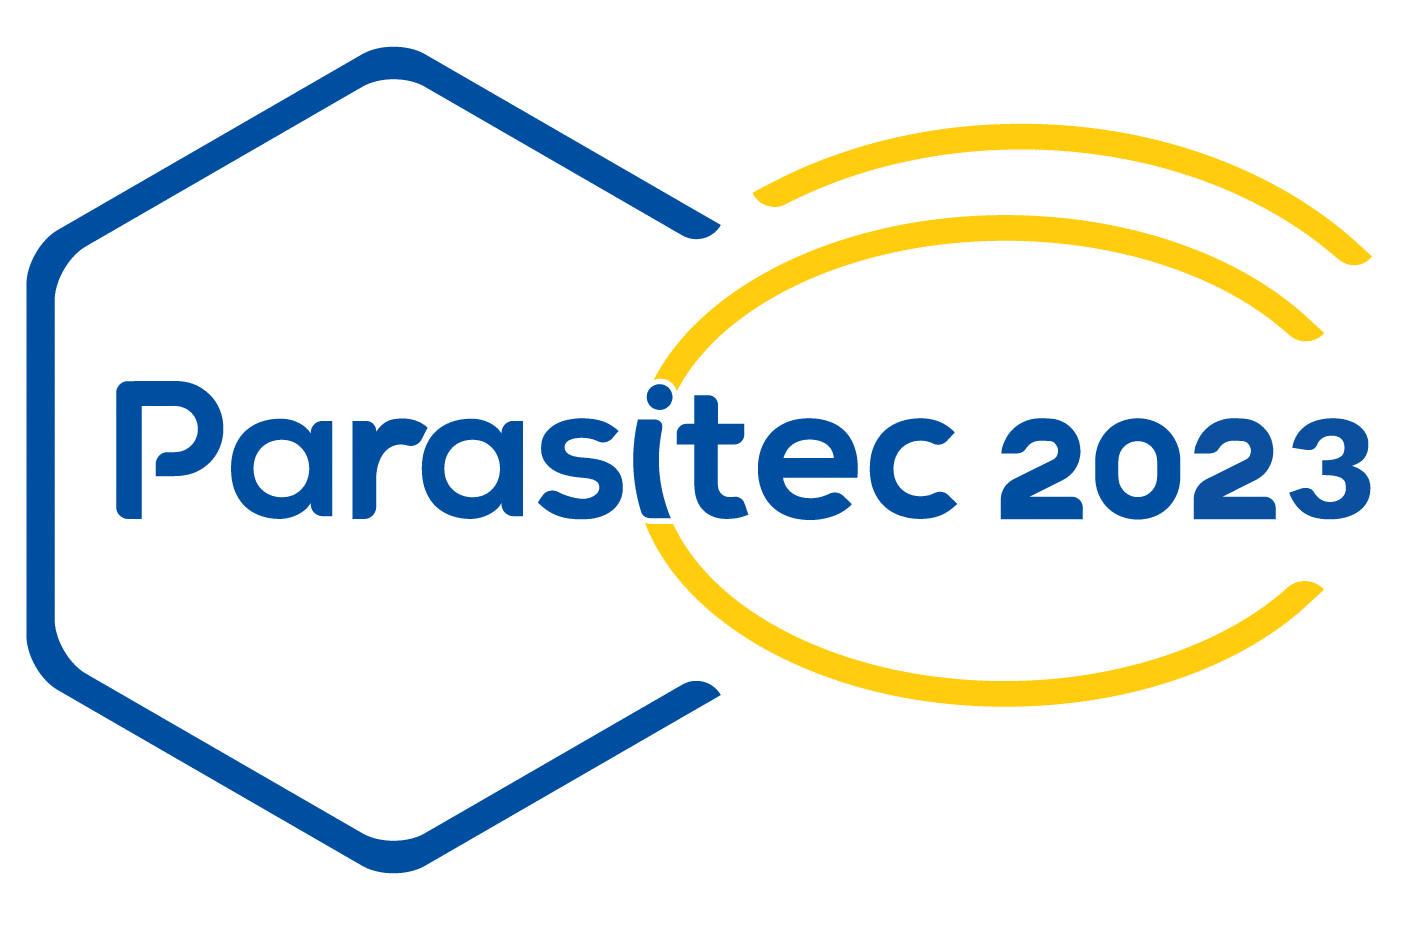 DebugPro à Parasitec 2023 : Éradiquer les Punaises de Lit avec Expertise Certifiée